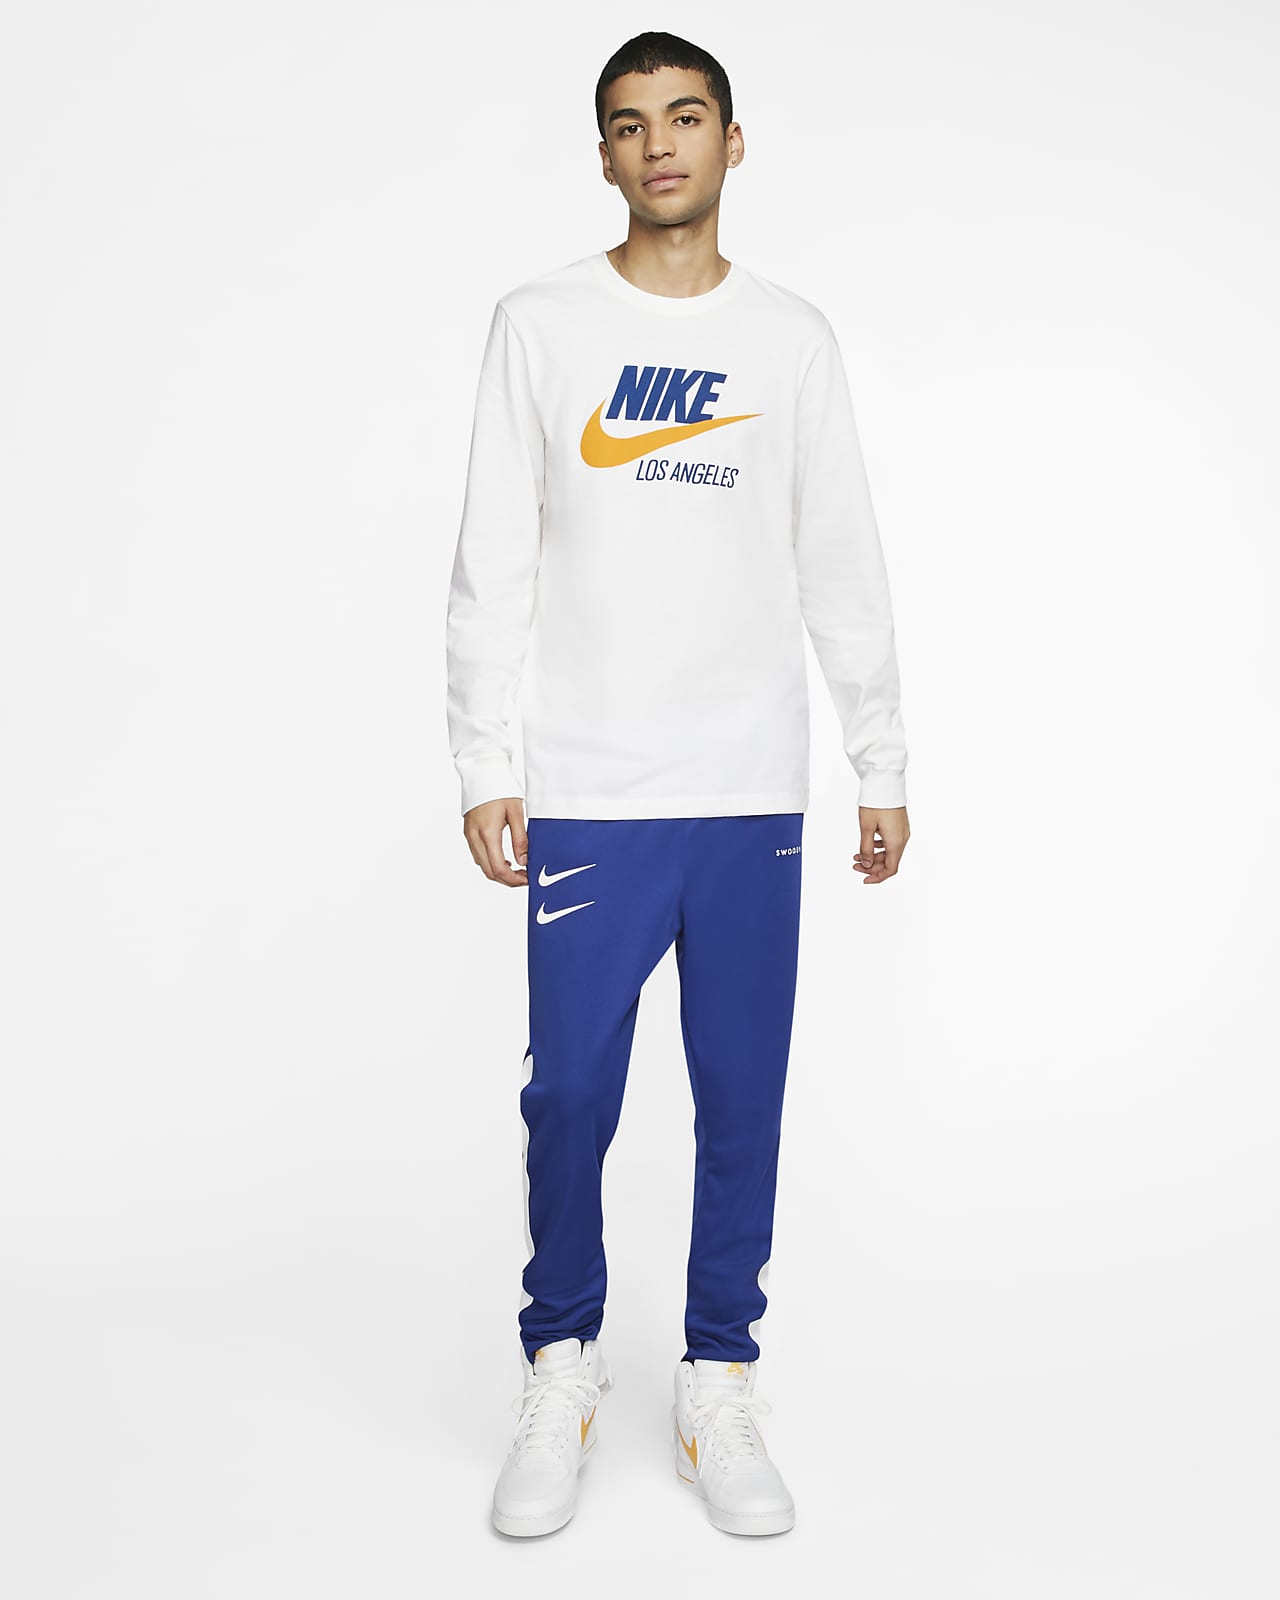 Nike Sportswear Men's Los Angeles T-Shirt. Nike.com